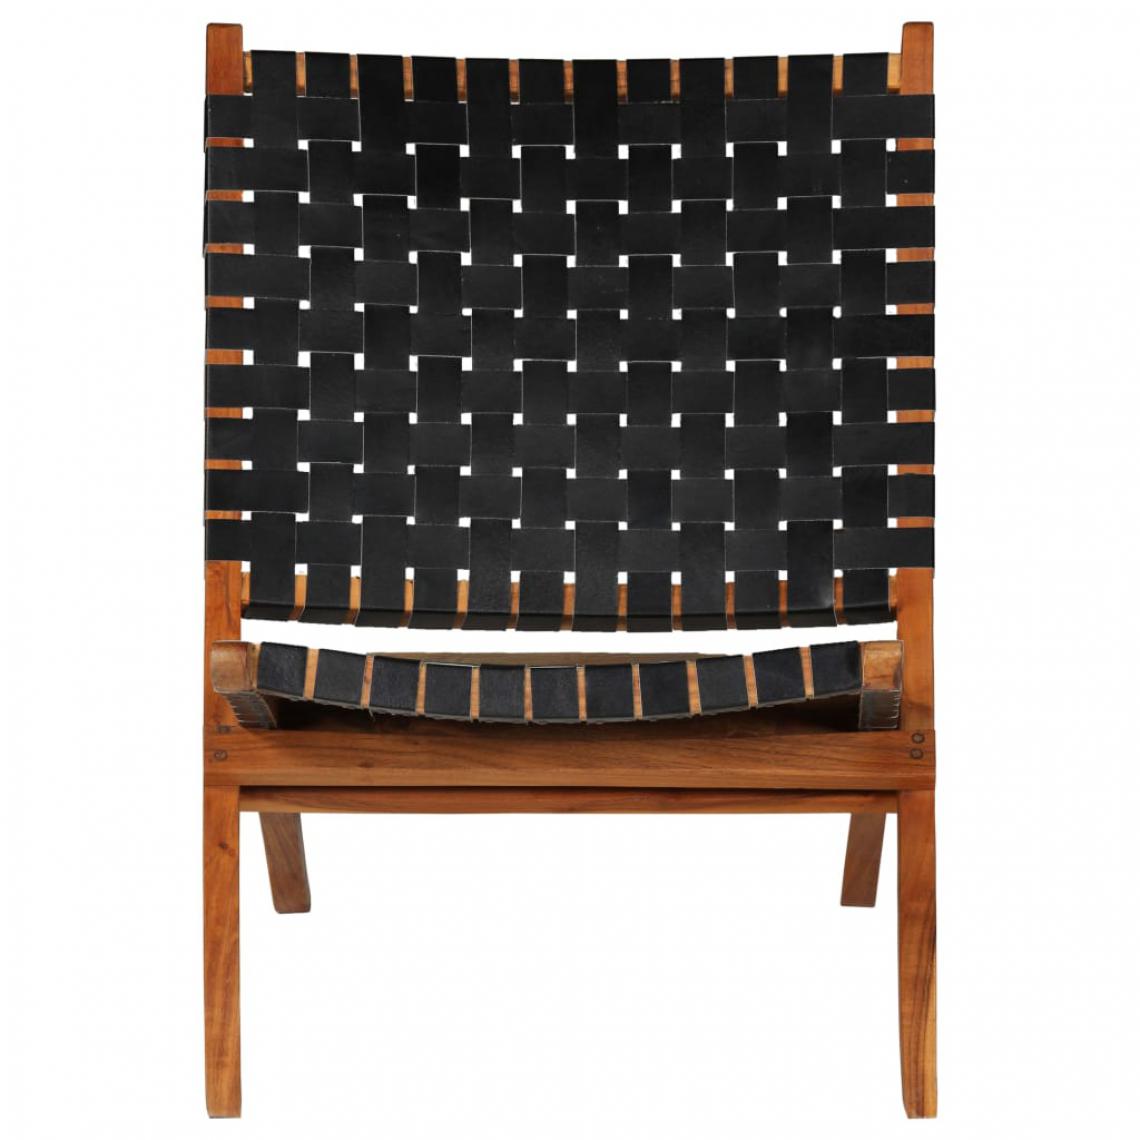 Icaverne - Icaverne - Chaises pliantes et tabourets pliants serie Chaise de relaxation Cuir véritable 59x72x79 cm Bandes Noir - Chaises